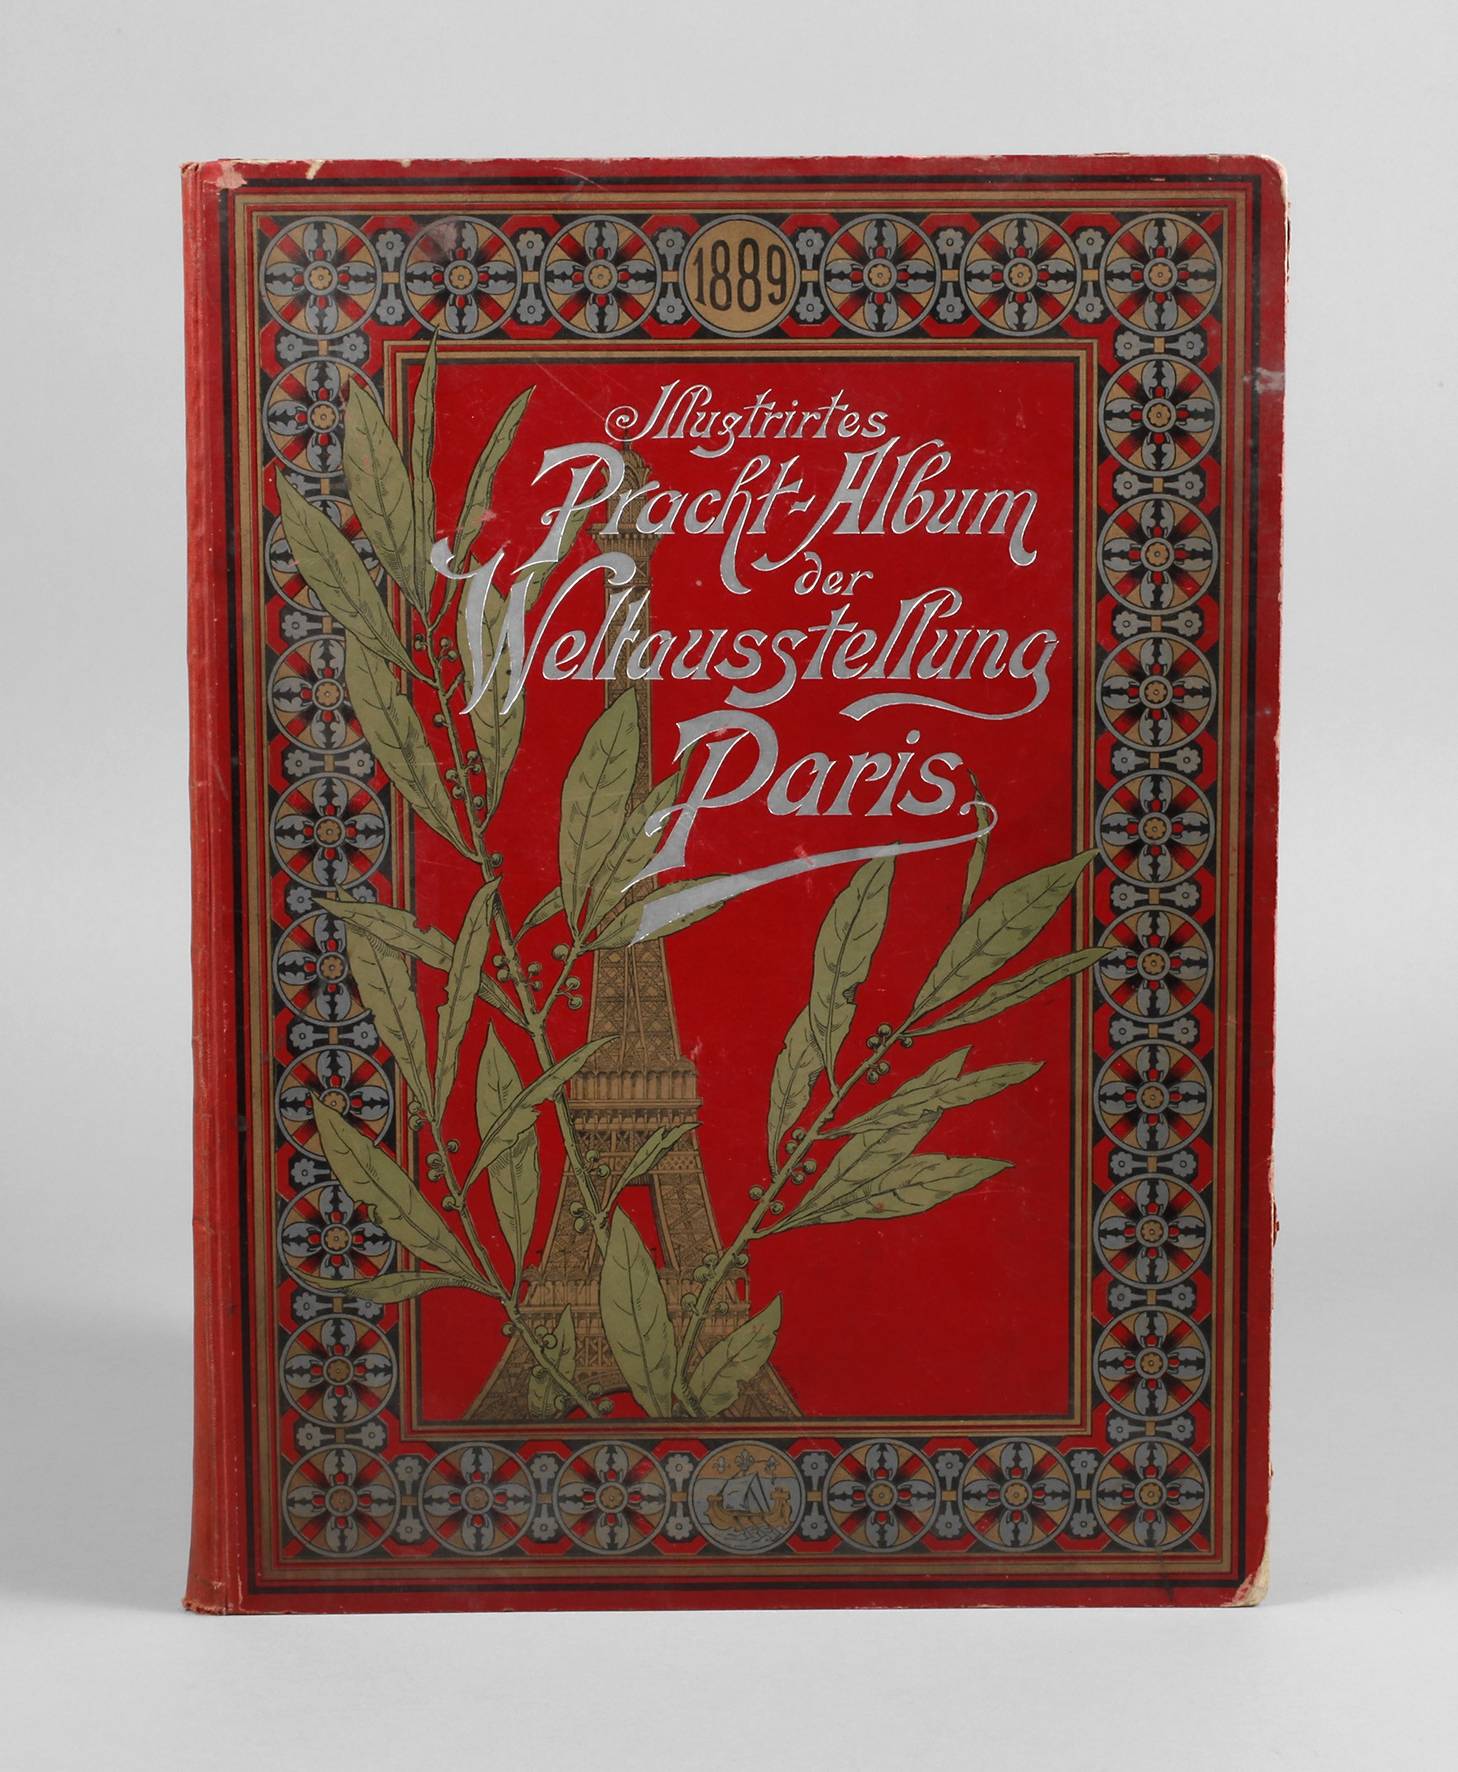 Album Pariser Weltausstellung 1889